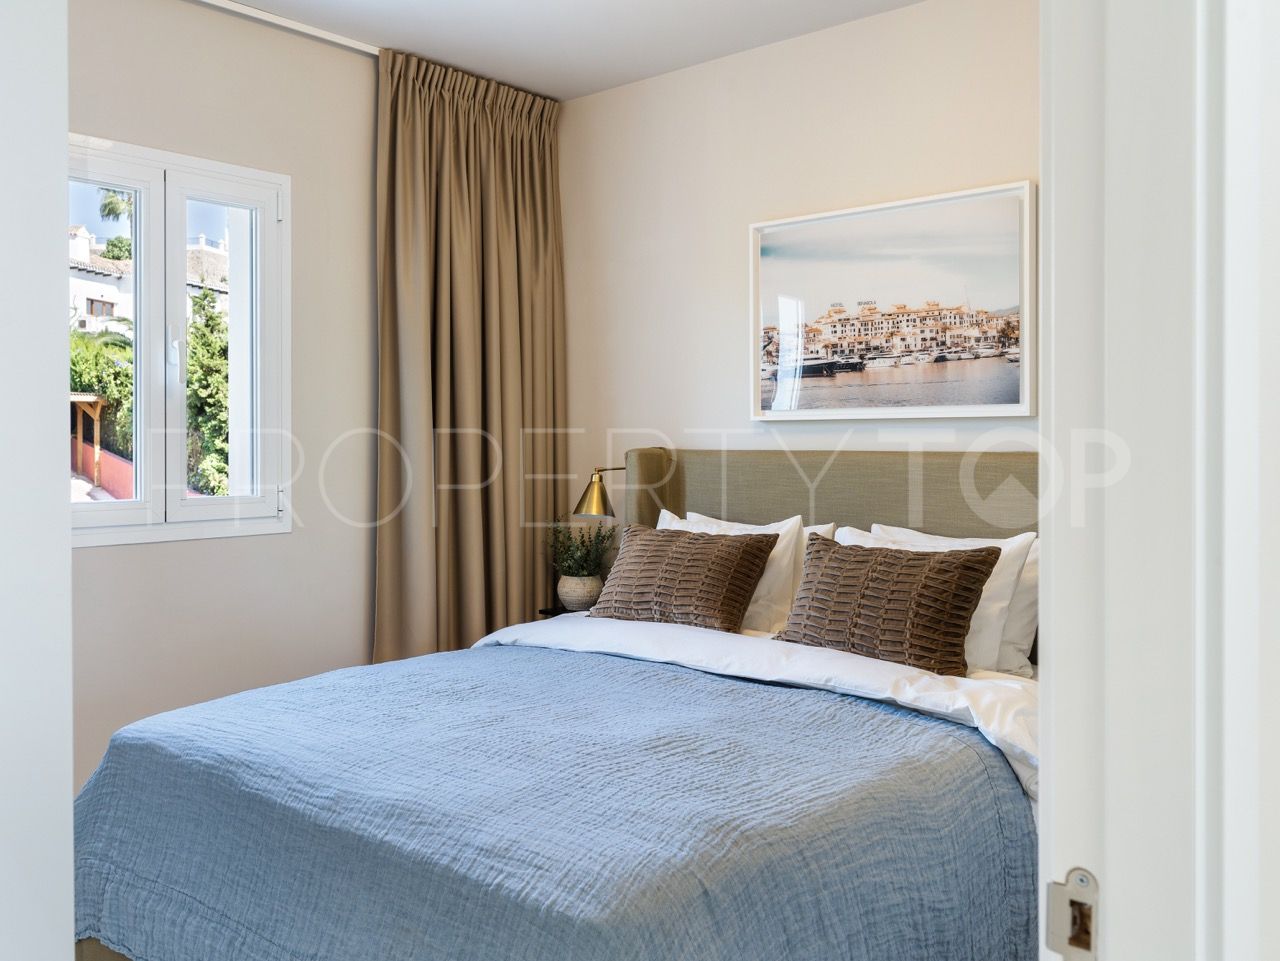 Adosado con 4 dormitorios en venta en La Quinta